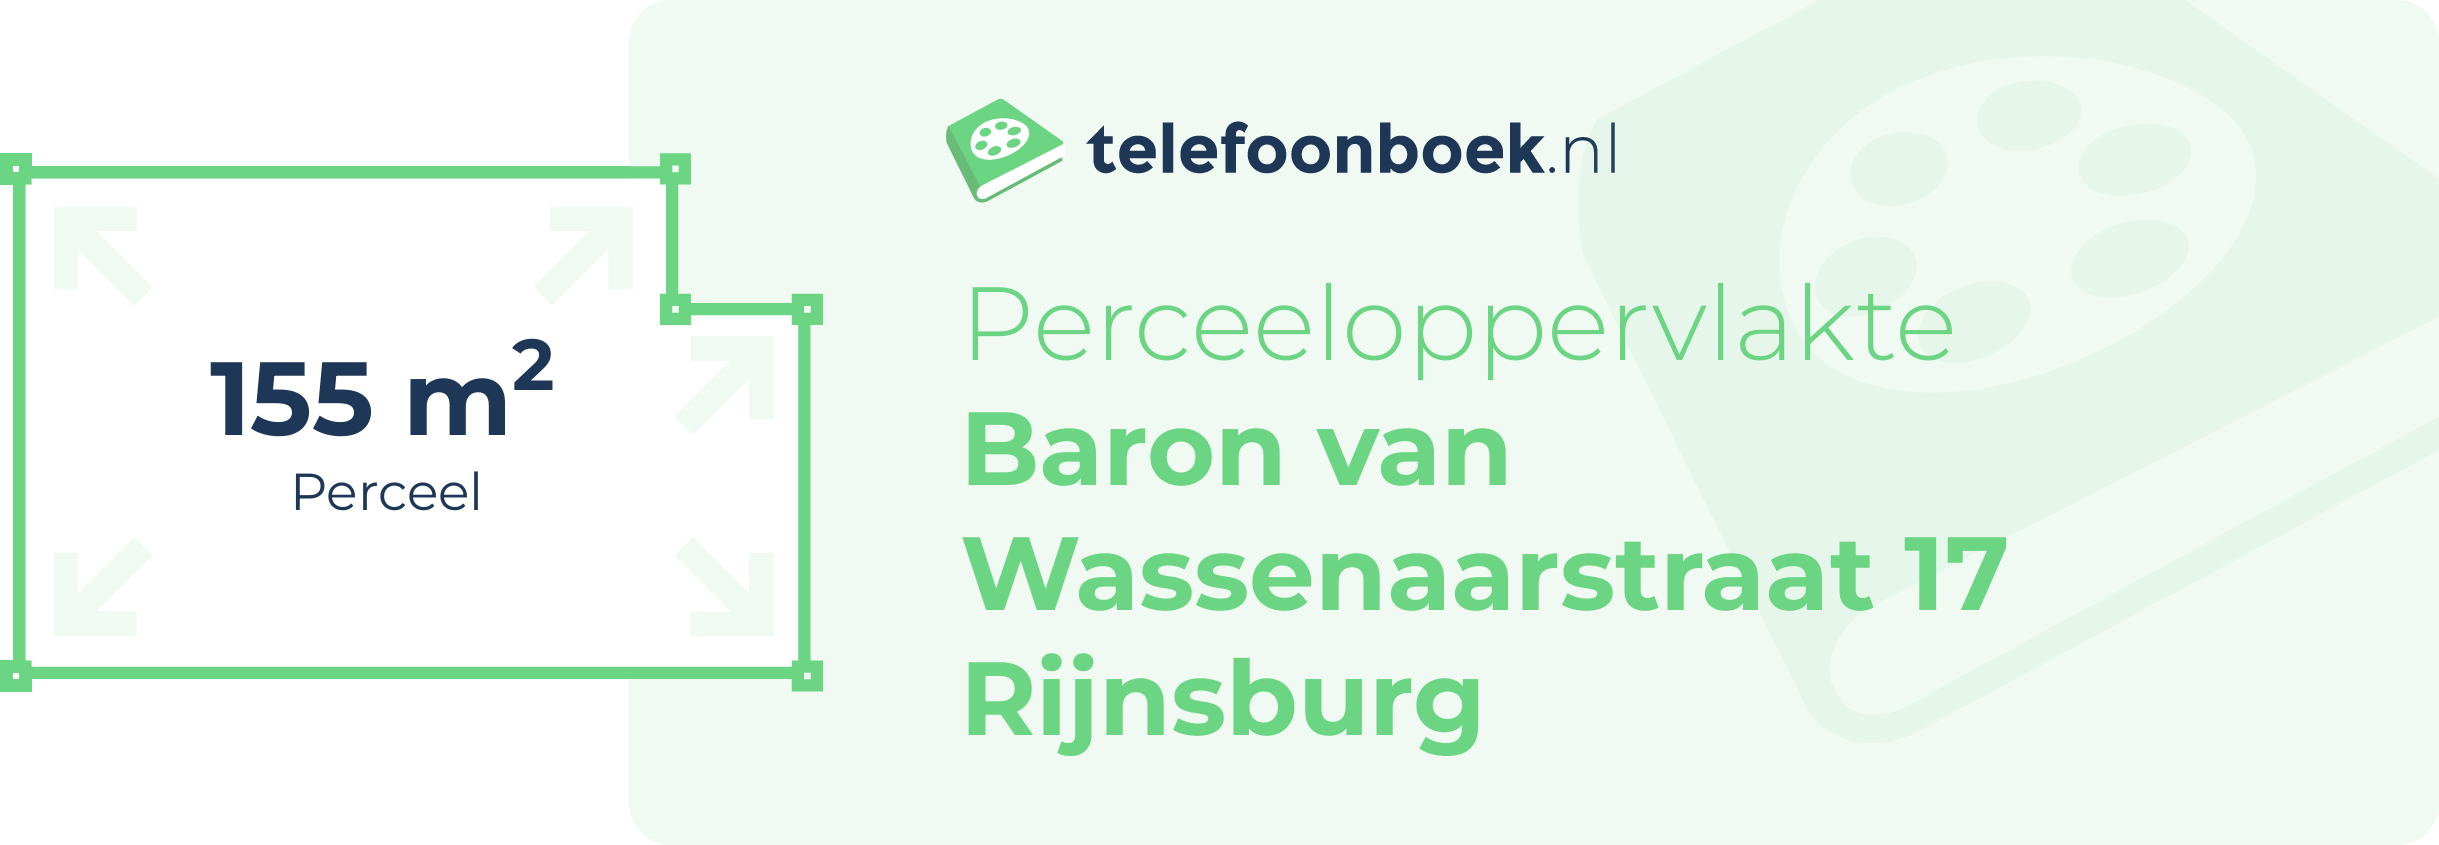 Perceeloppervlakte Baron Van Wassenaarstraat 17 Rijnsburg